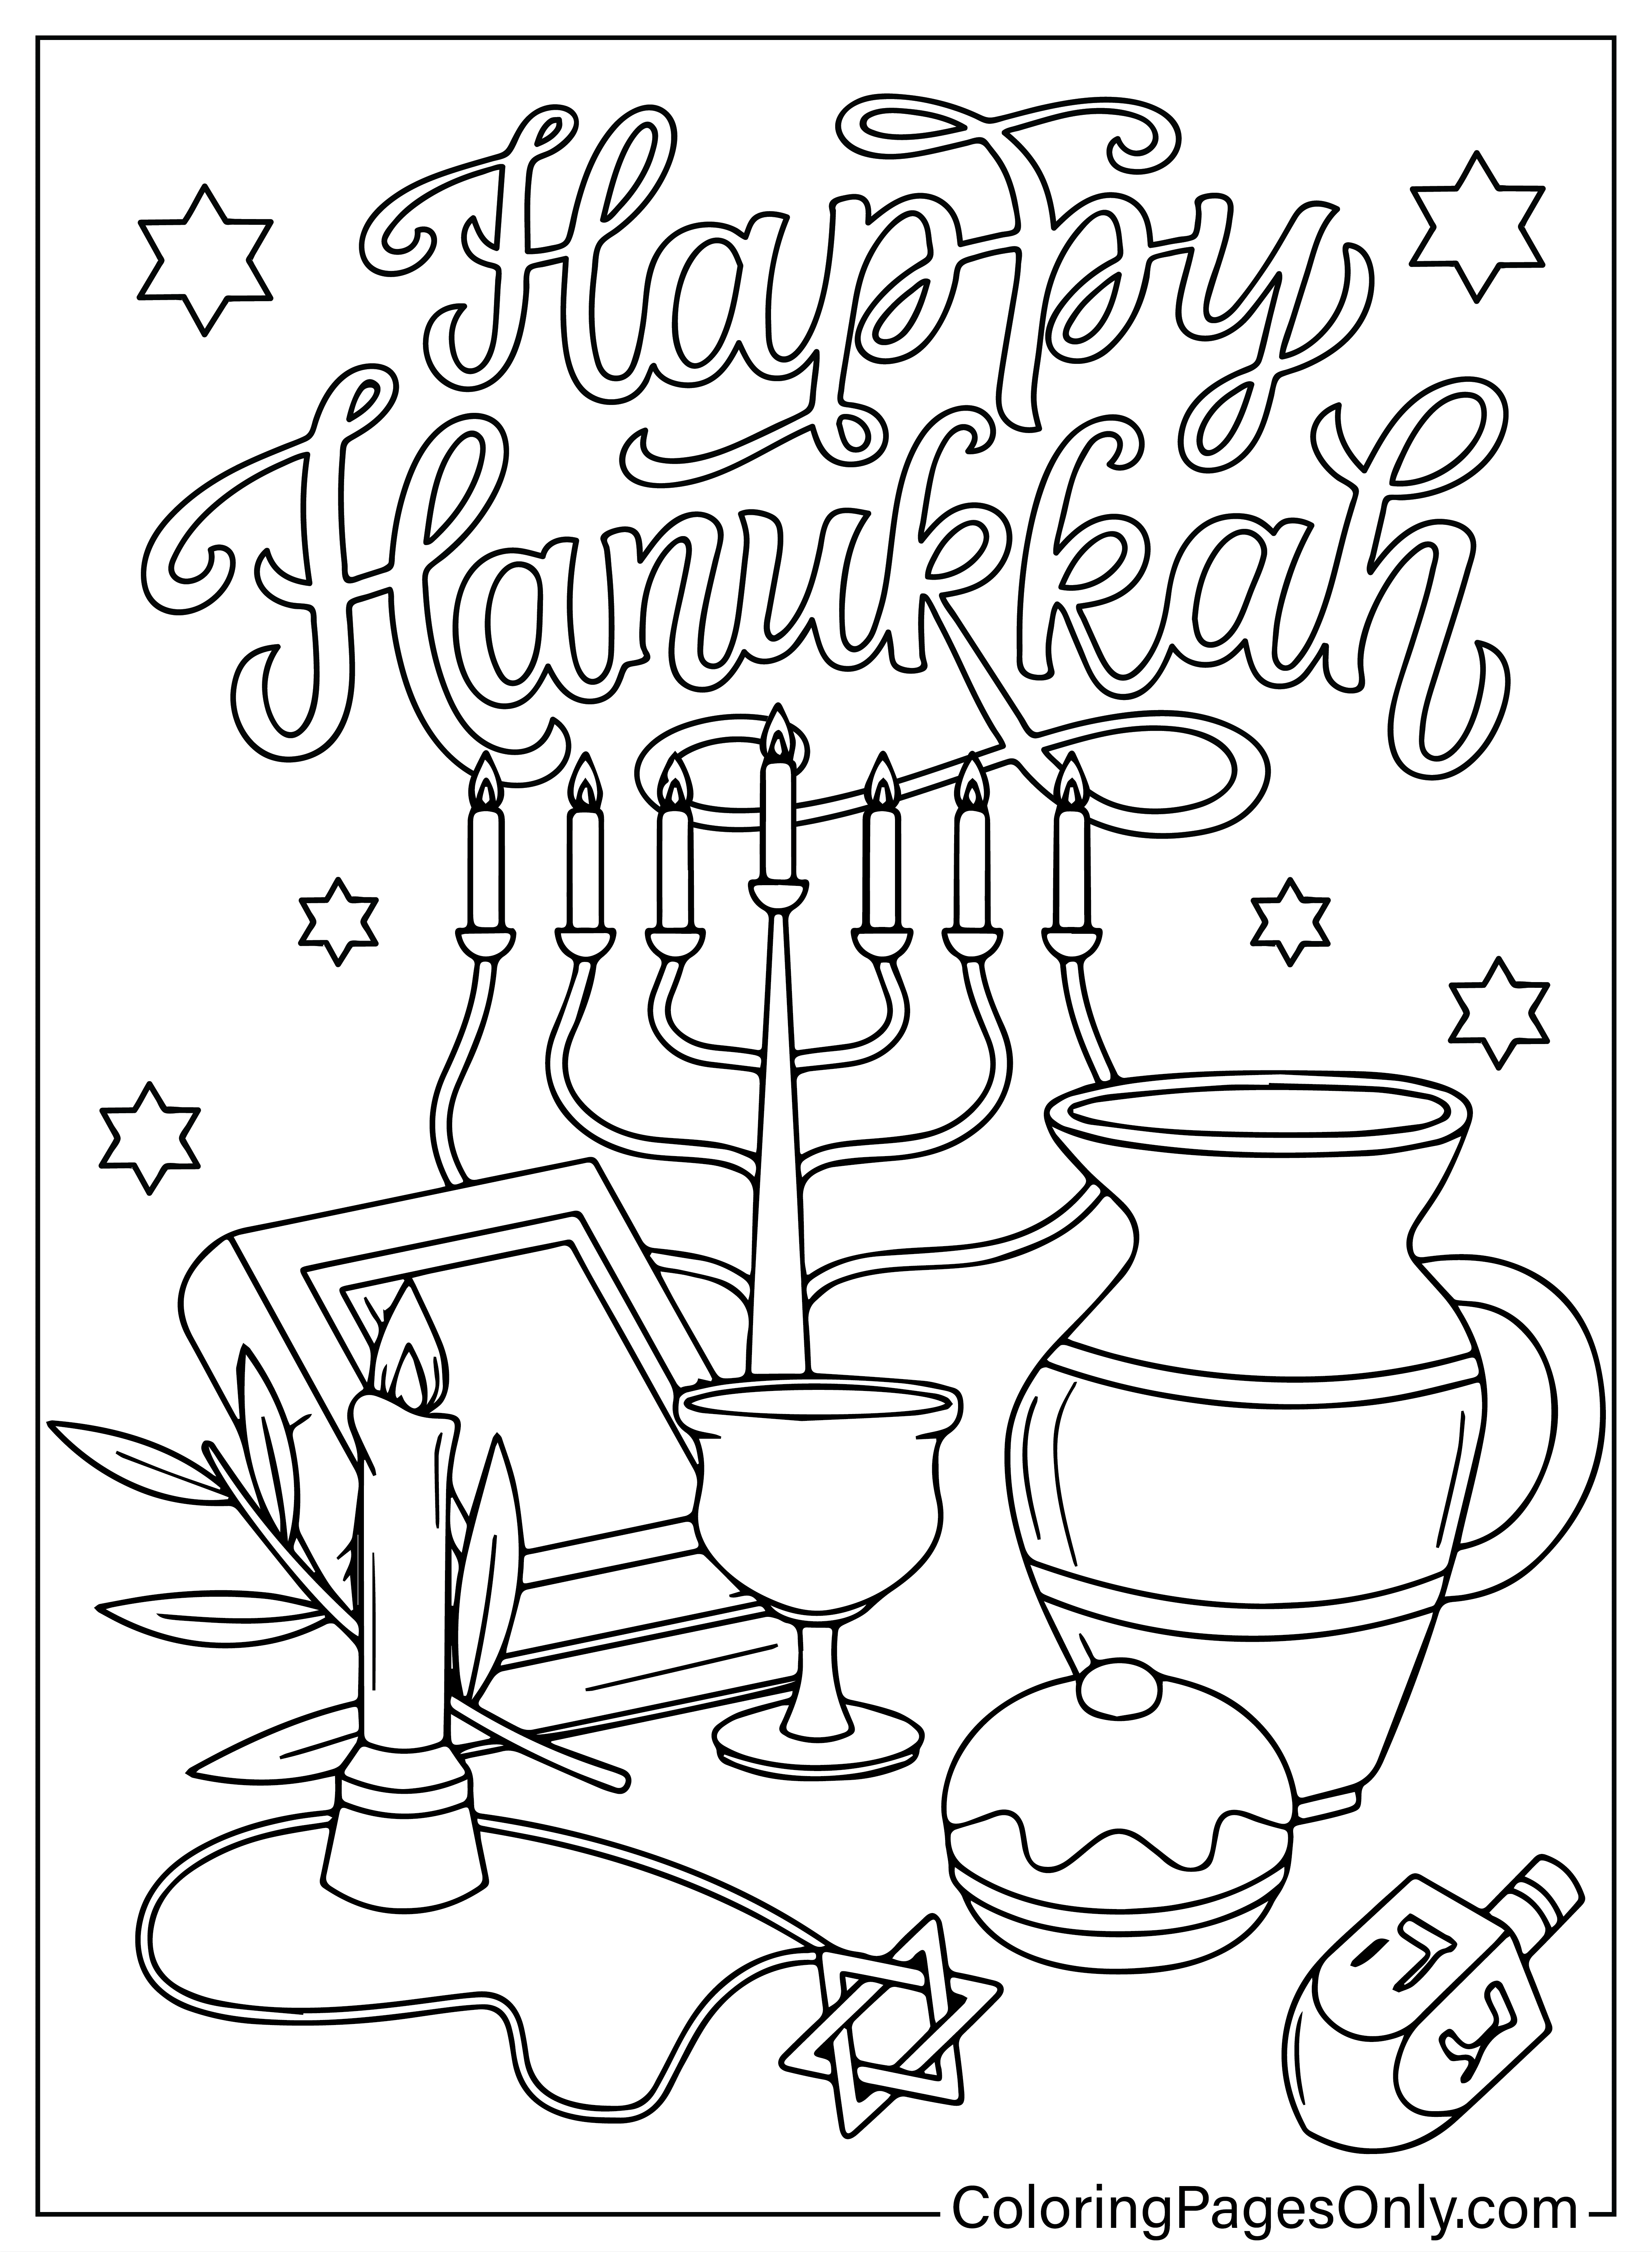 Página para colorear de Hanukkah gratis de Hanukkah